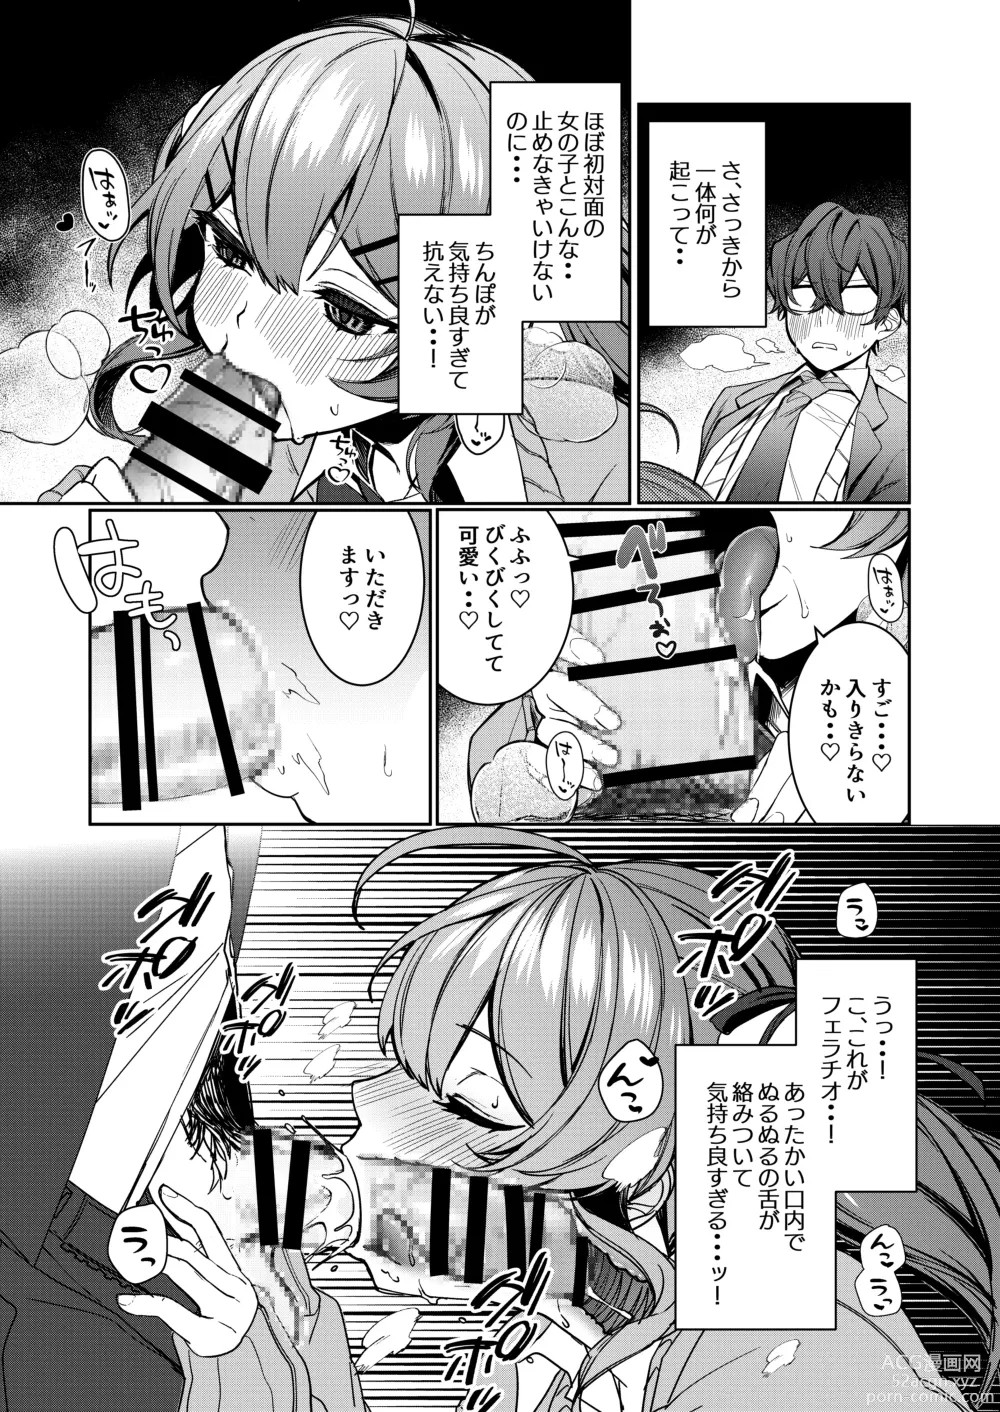 Page 7 of doujinshi Junyoku